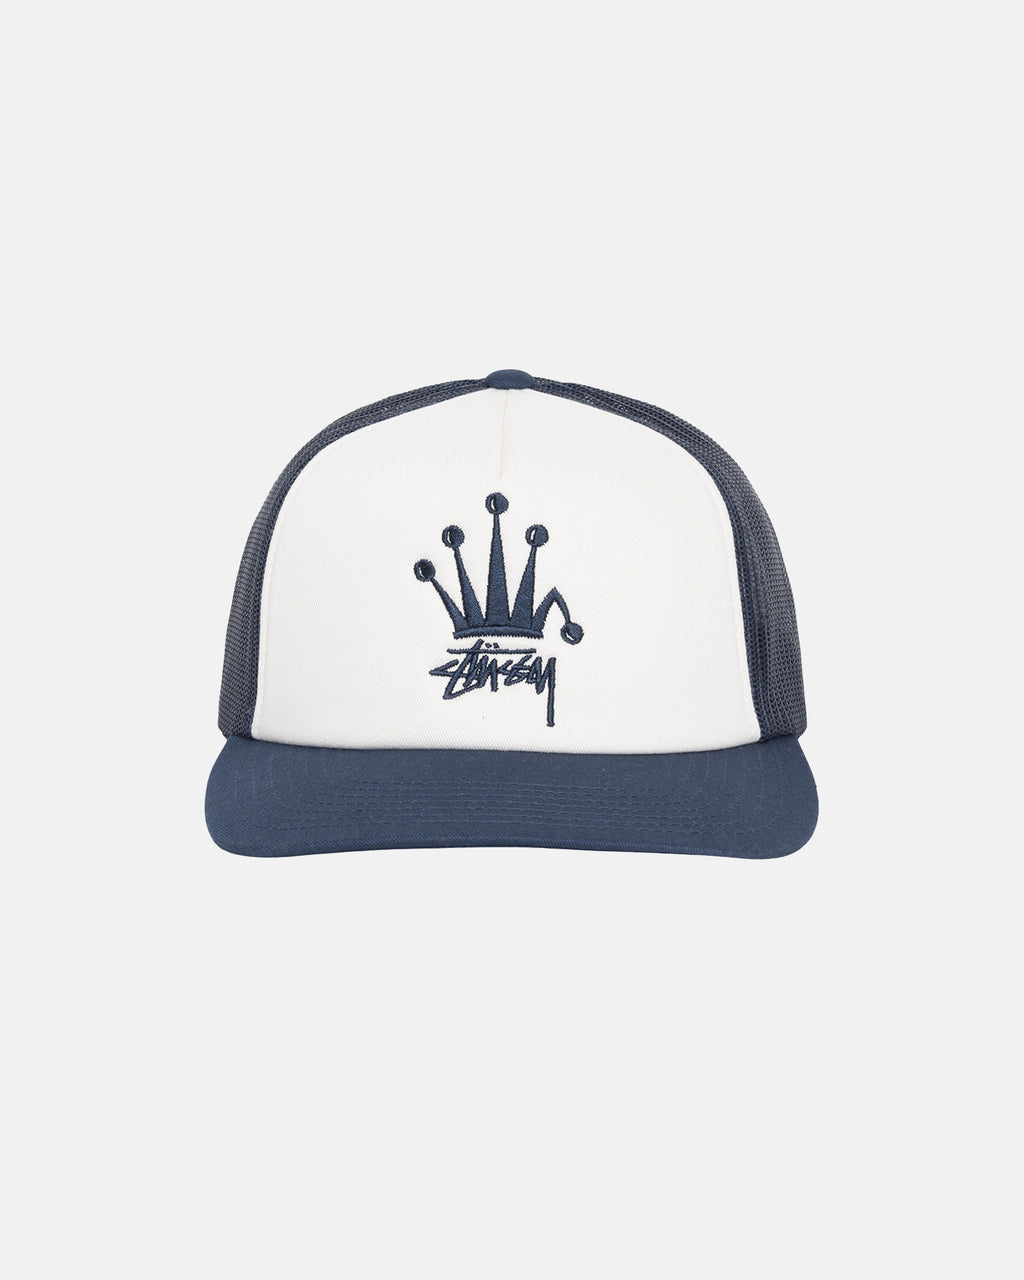 Stussy Headwear Online Shop - Navy Crown Stock Trucker Cap